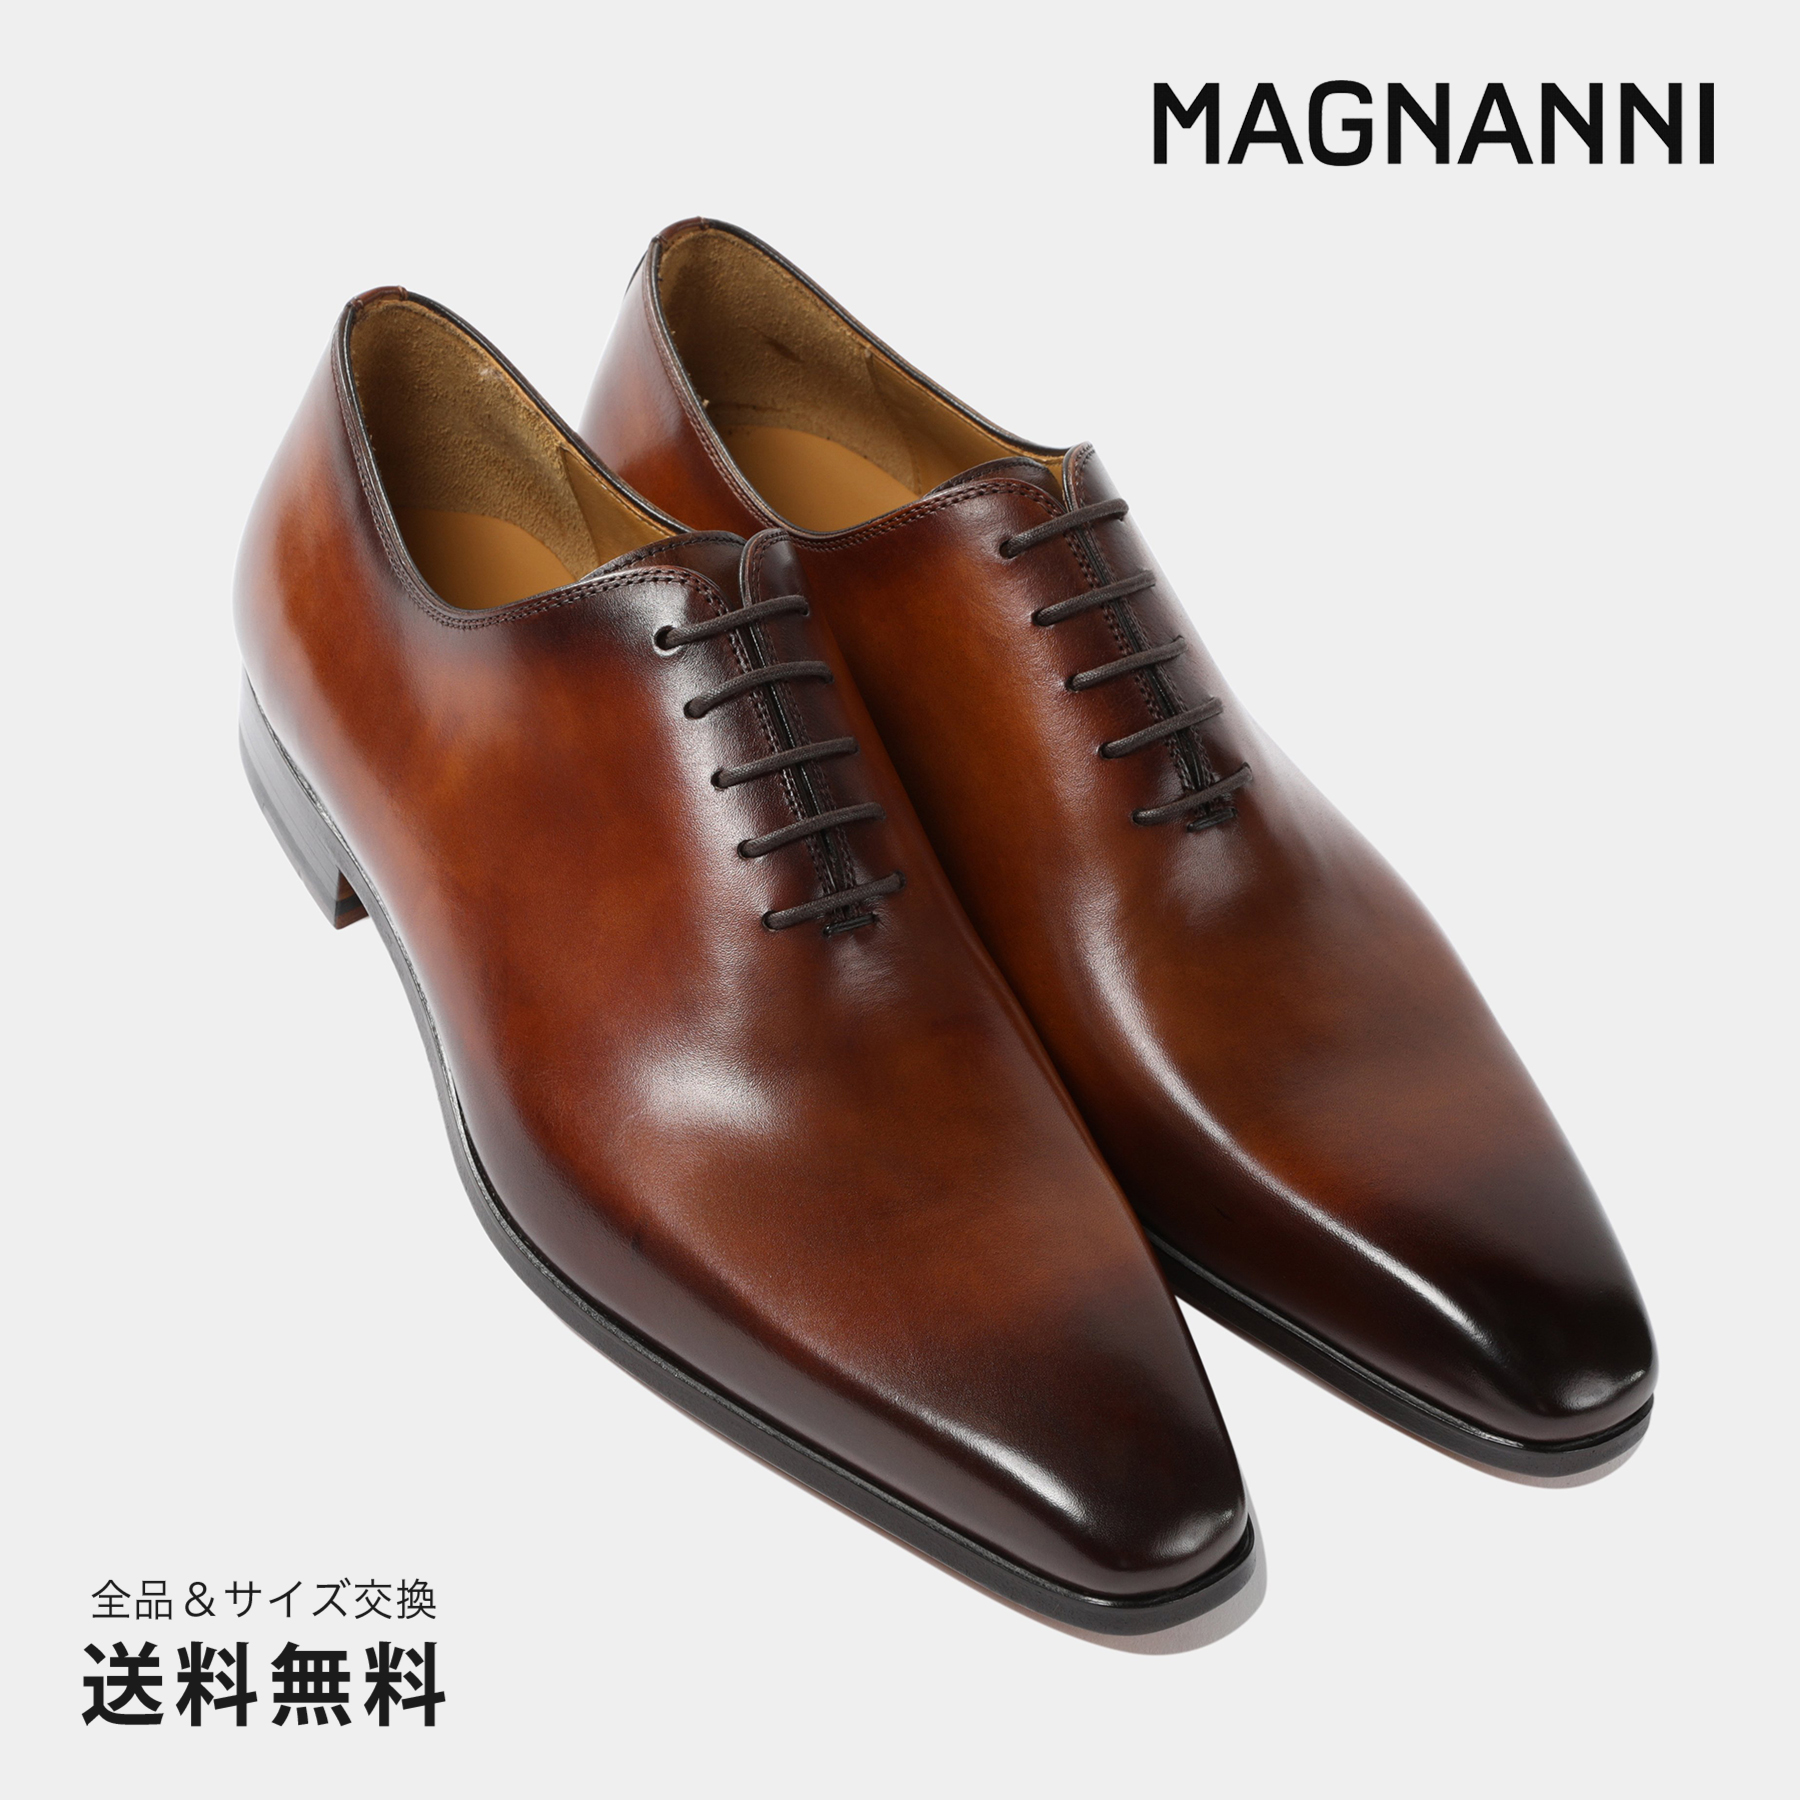 MAGNANNI / マグナーニ /ストレートチップシューズ /サイズ41-